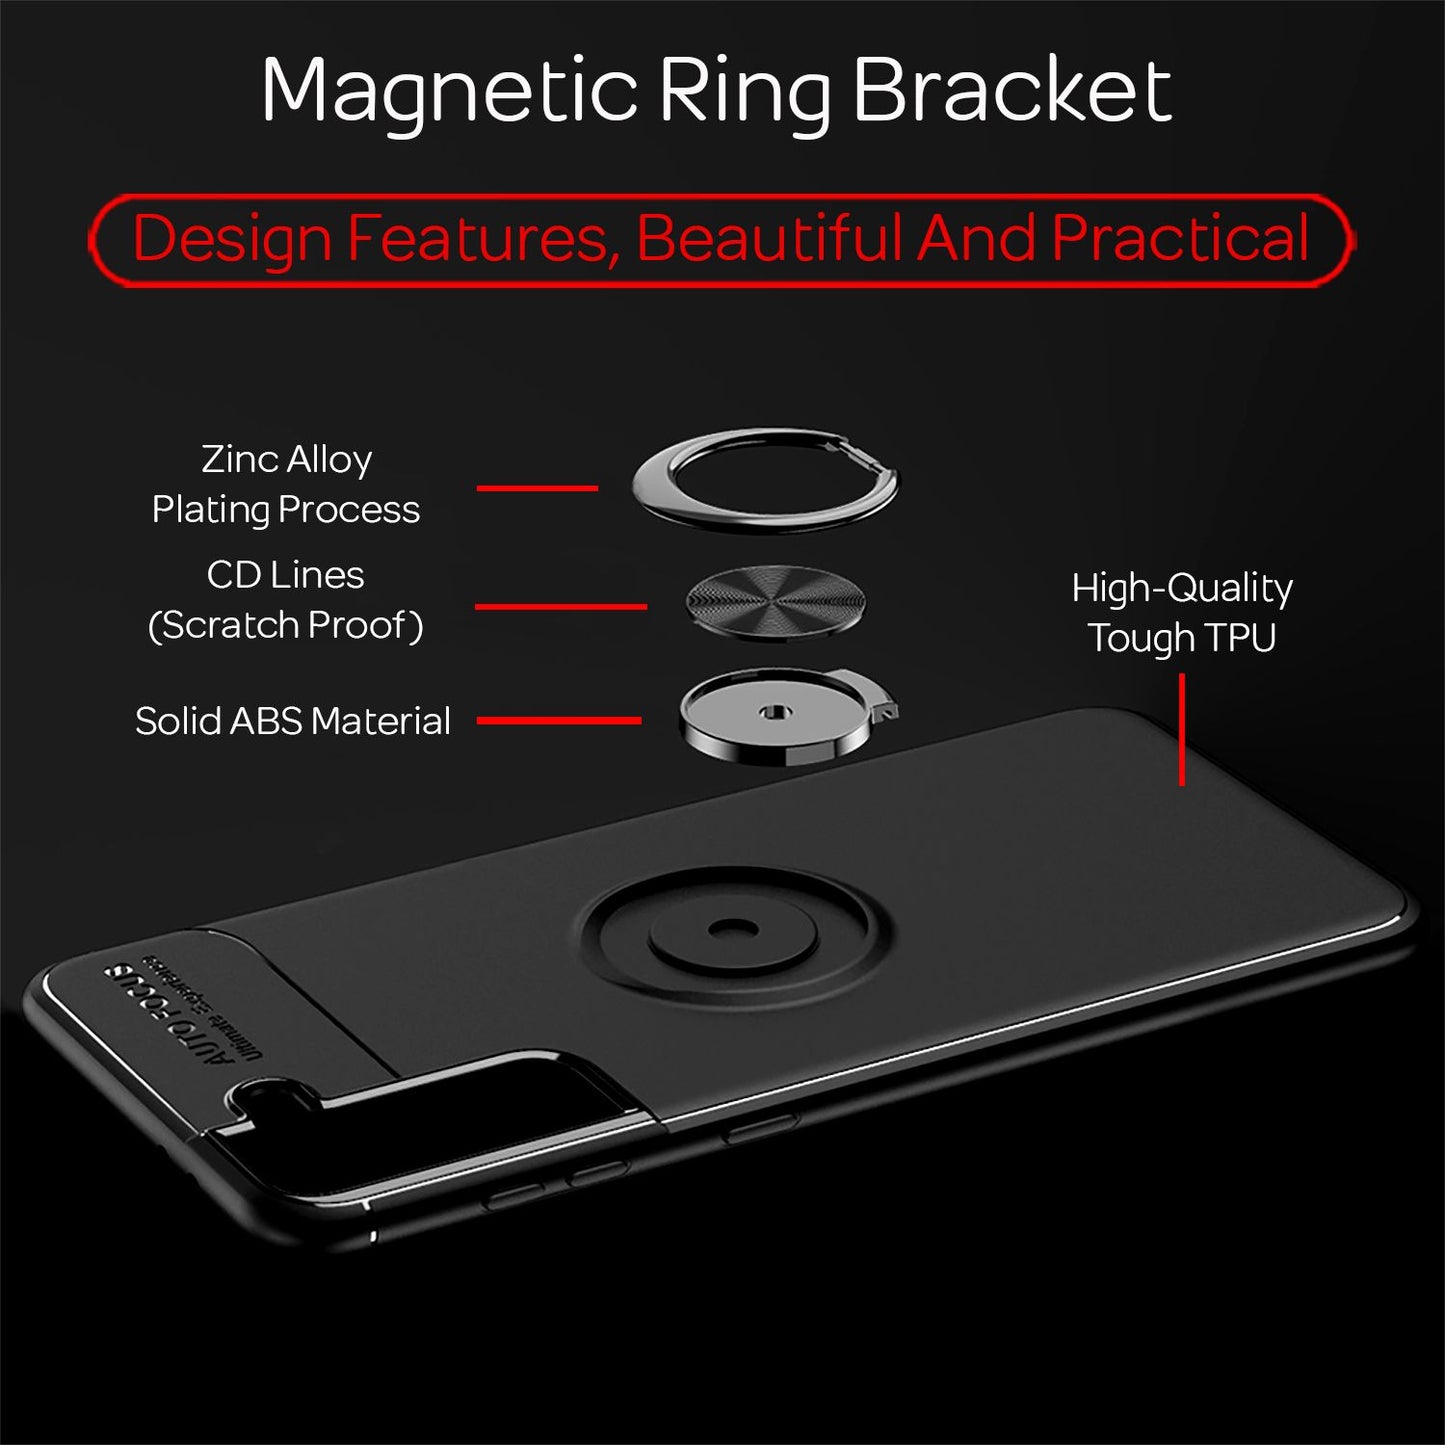 NALIA Ring Handy Hülle für Samsung Galaxy S21, Schutz Case Tasche Etui Bumper